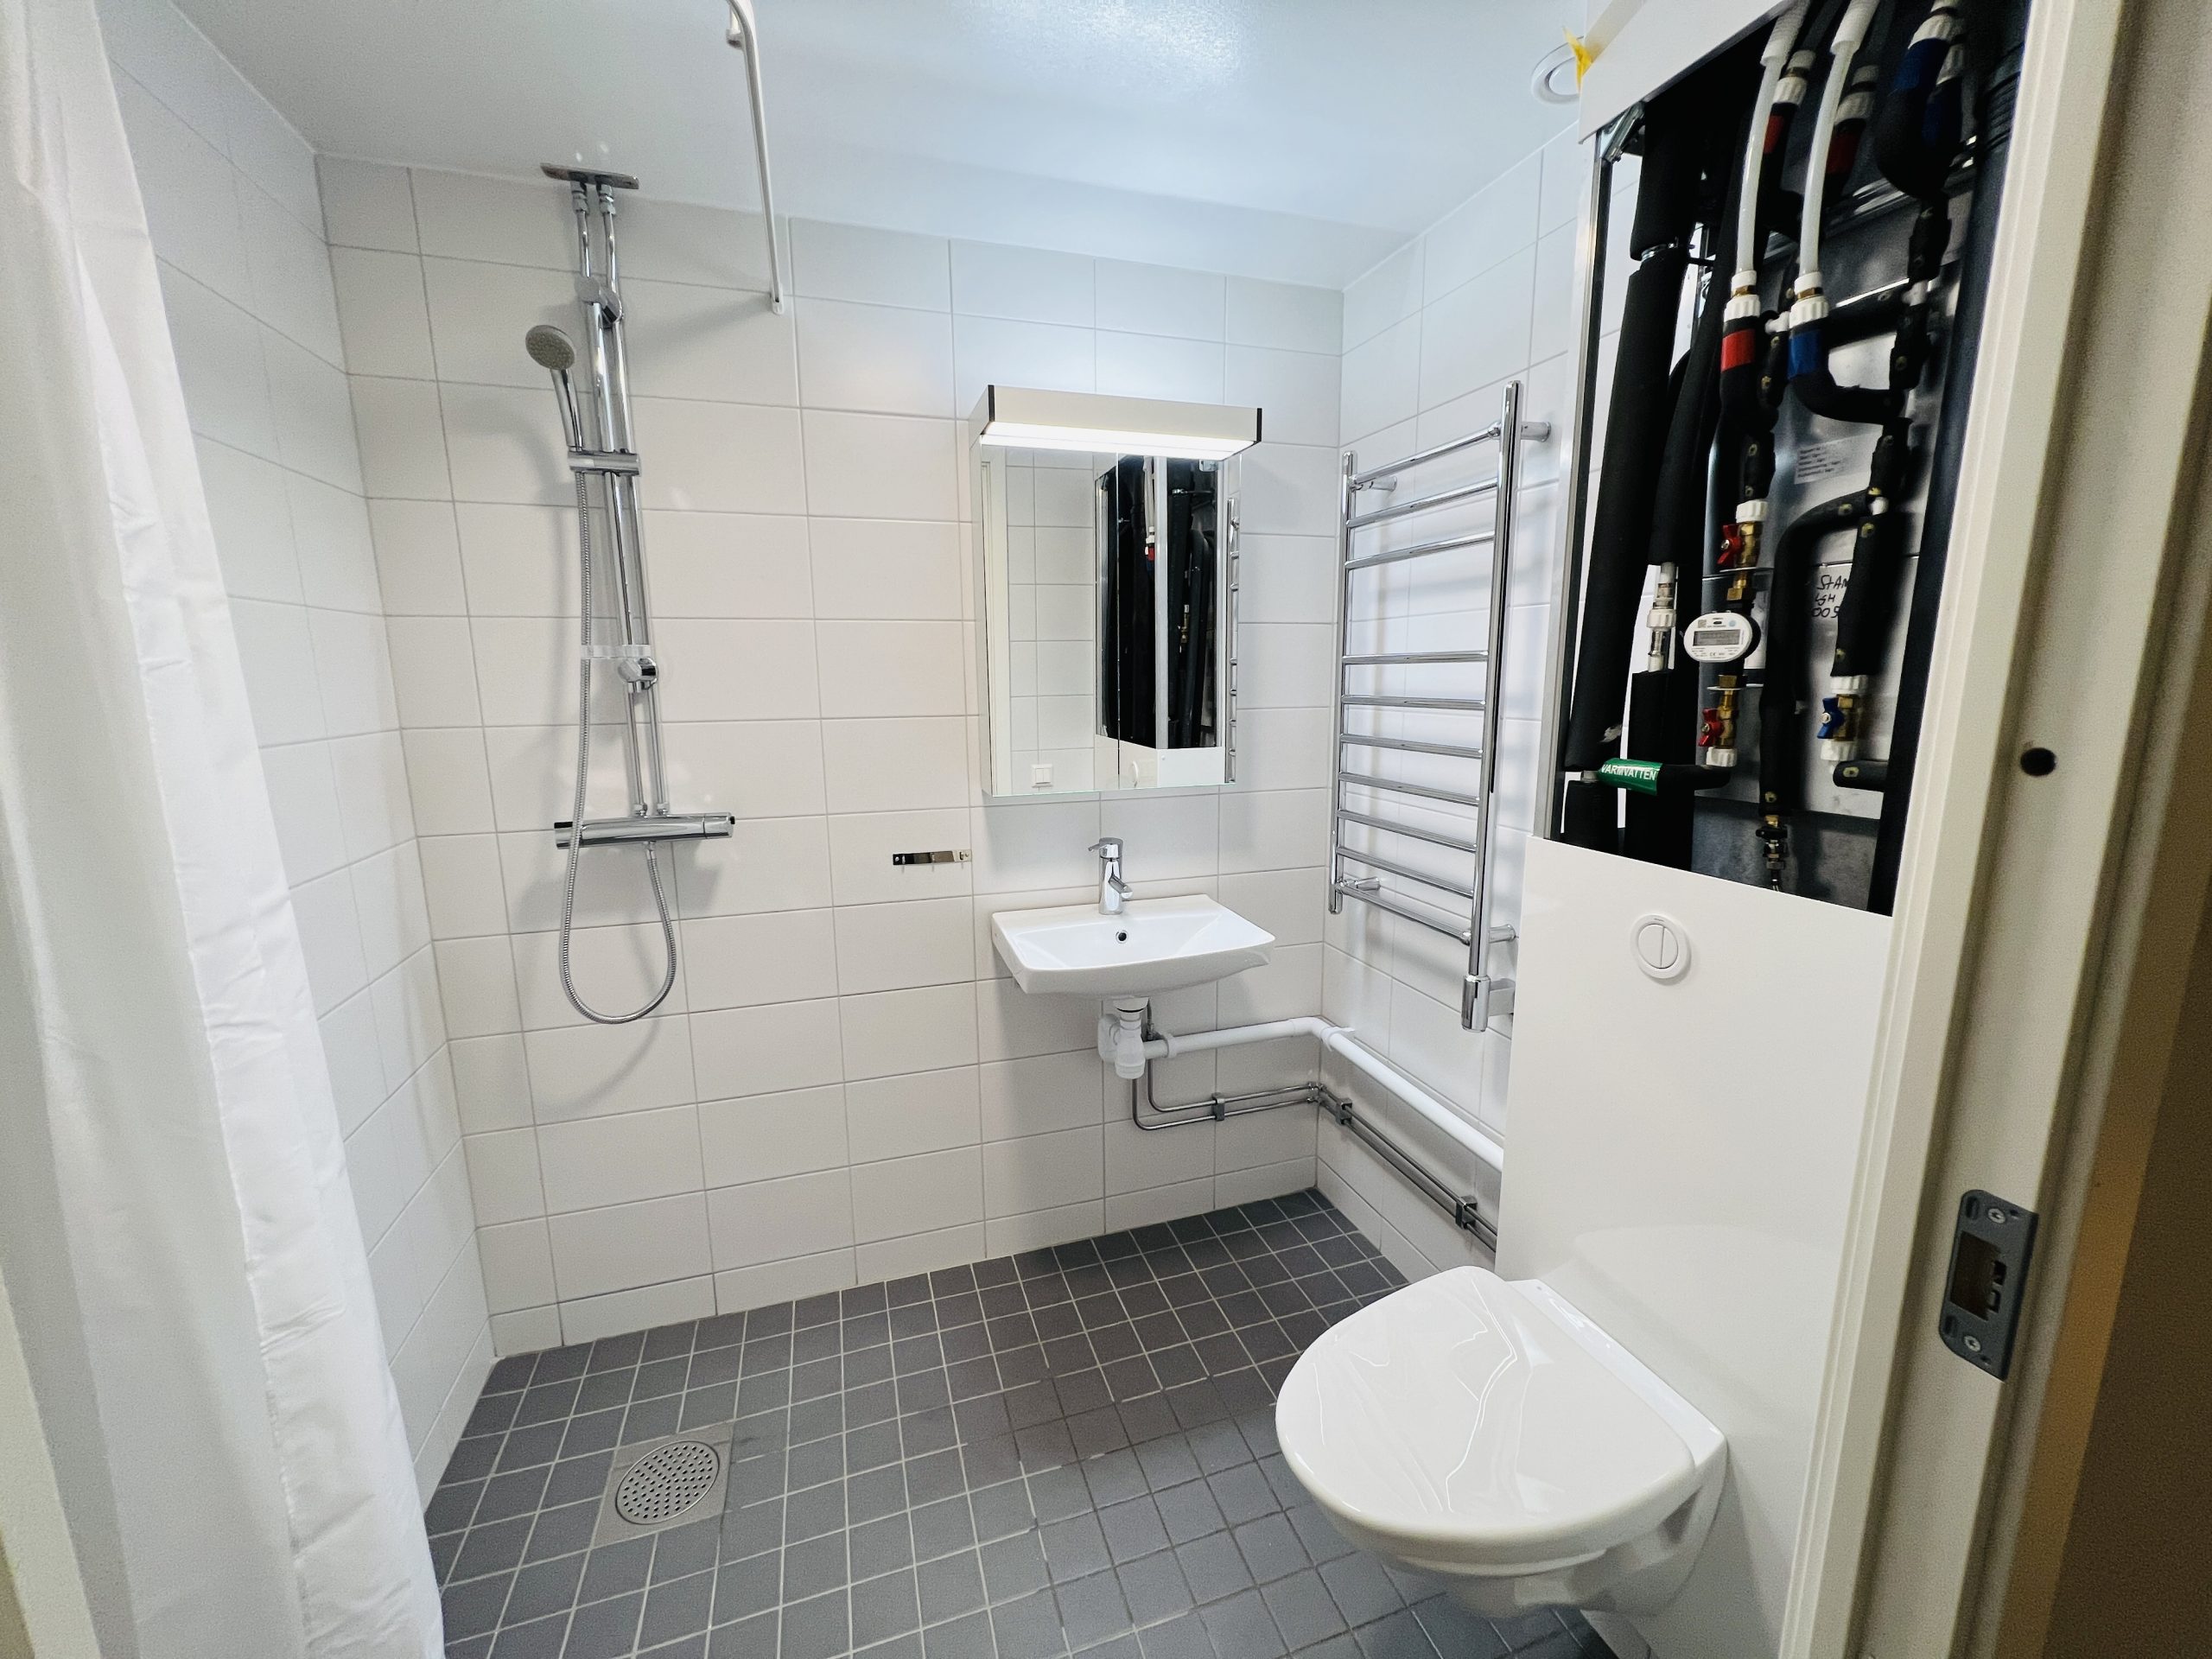 Asbestsanering vid rivning i badrummen, nya helkaklade badrum och badrumsinredning. Nytt gipsundertak i badrummet. Nya avloppsstammar samt vattenrör som gömts i vitlackerad plåtkassett i varje badrum. Nya breddade badrumsdörrar med massiva dörrblad. 